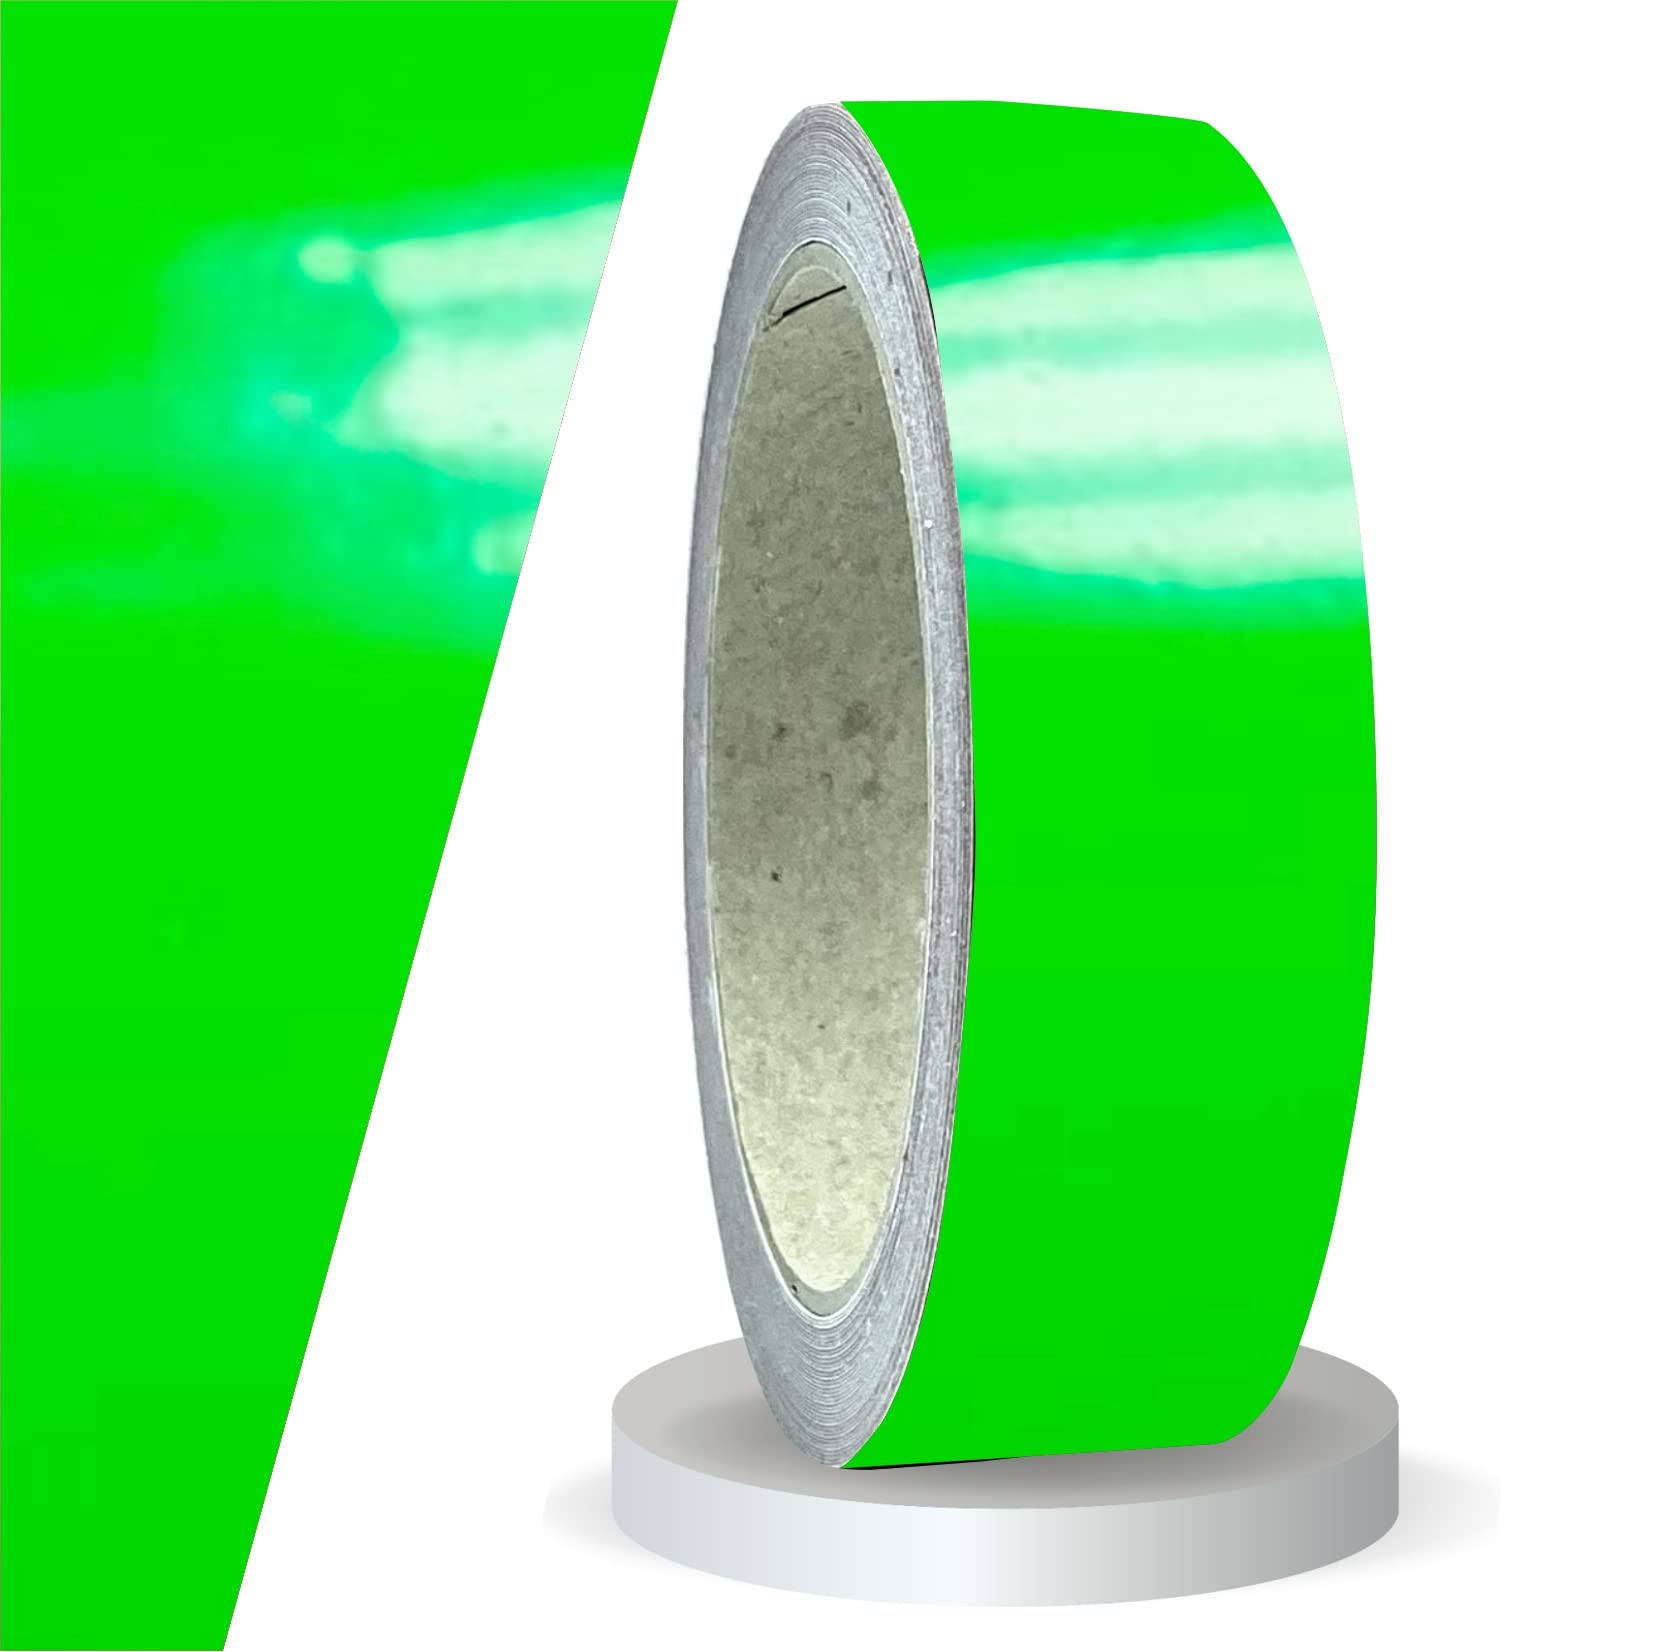 siviwonder Zierstreifen neon grün in 30 mm Breite und 10 m Länge für Auto Boot Jetski Modellbau Klebeband Aufkleber Dekorstreifen neongrün Fluor von siviwonder